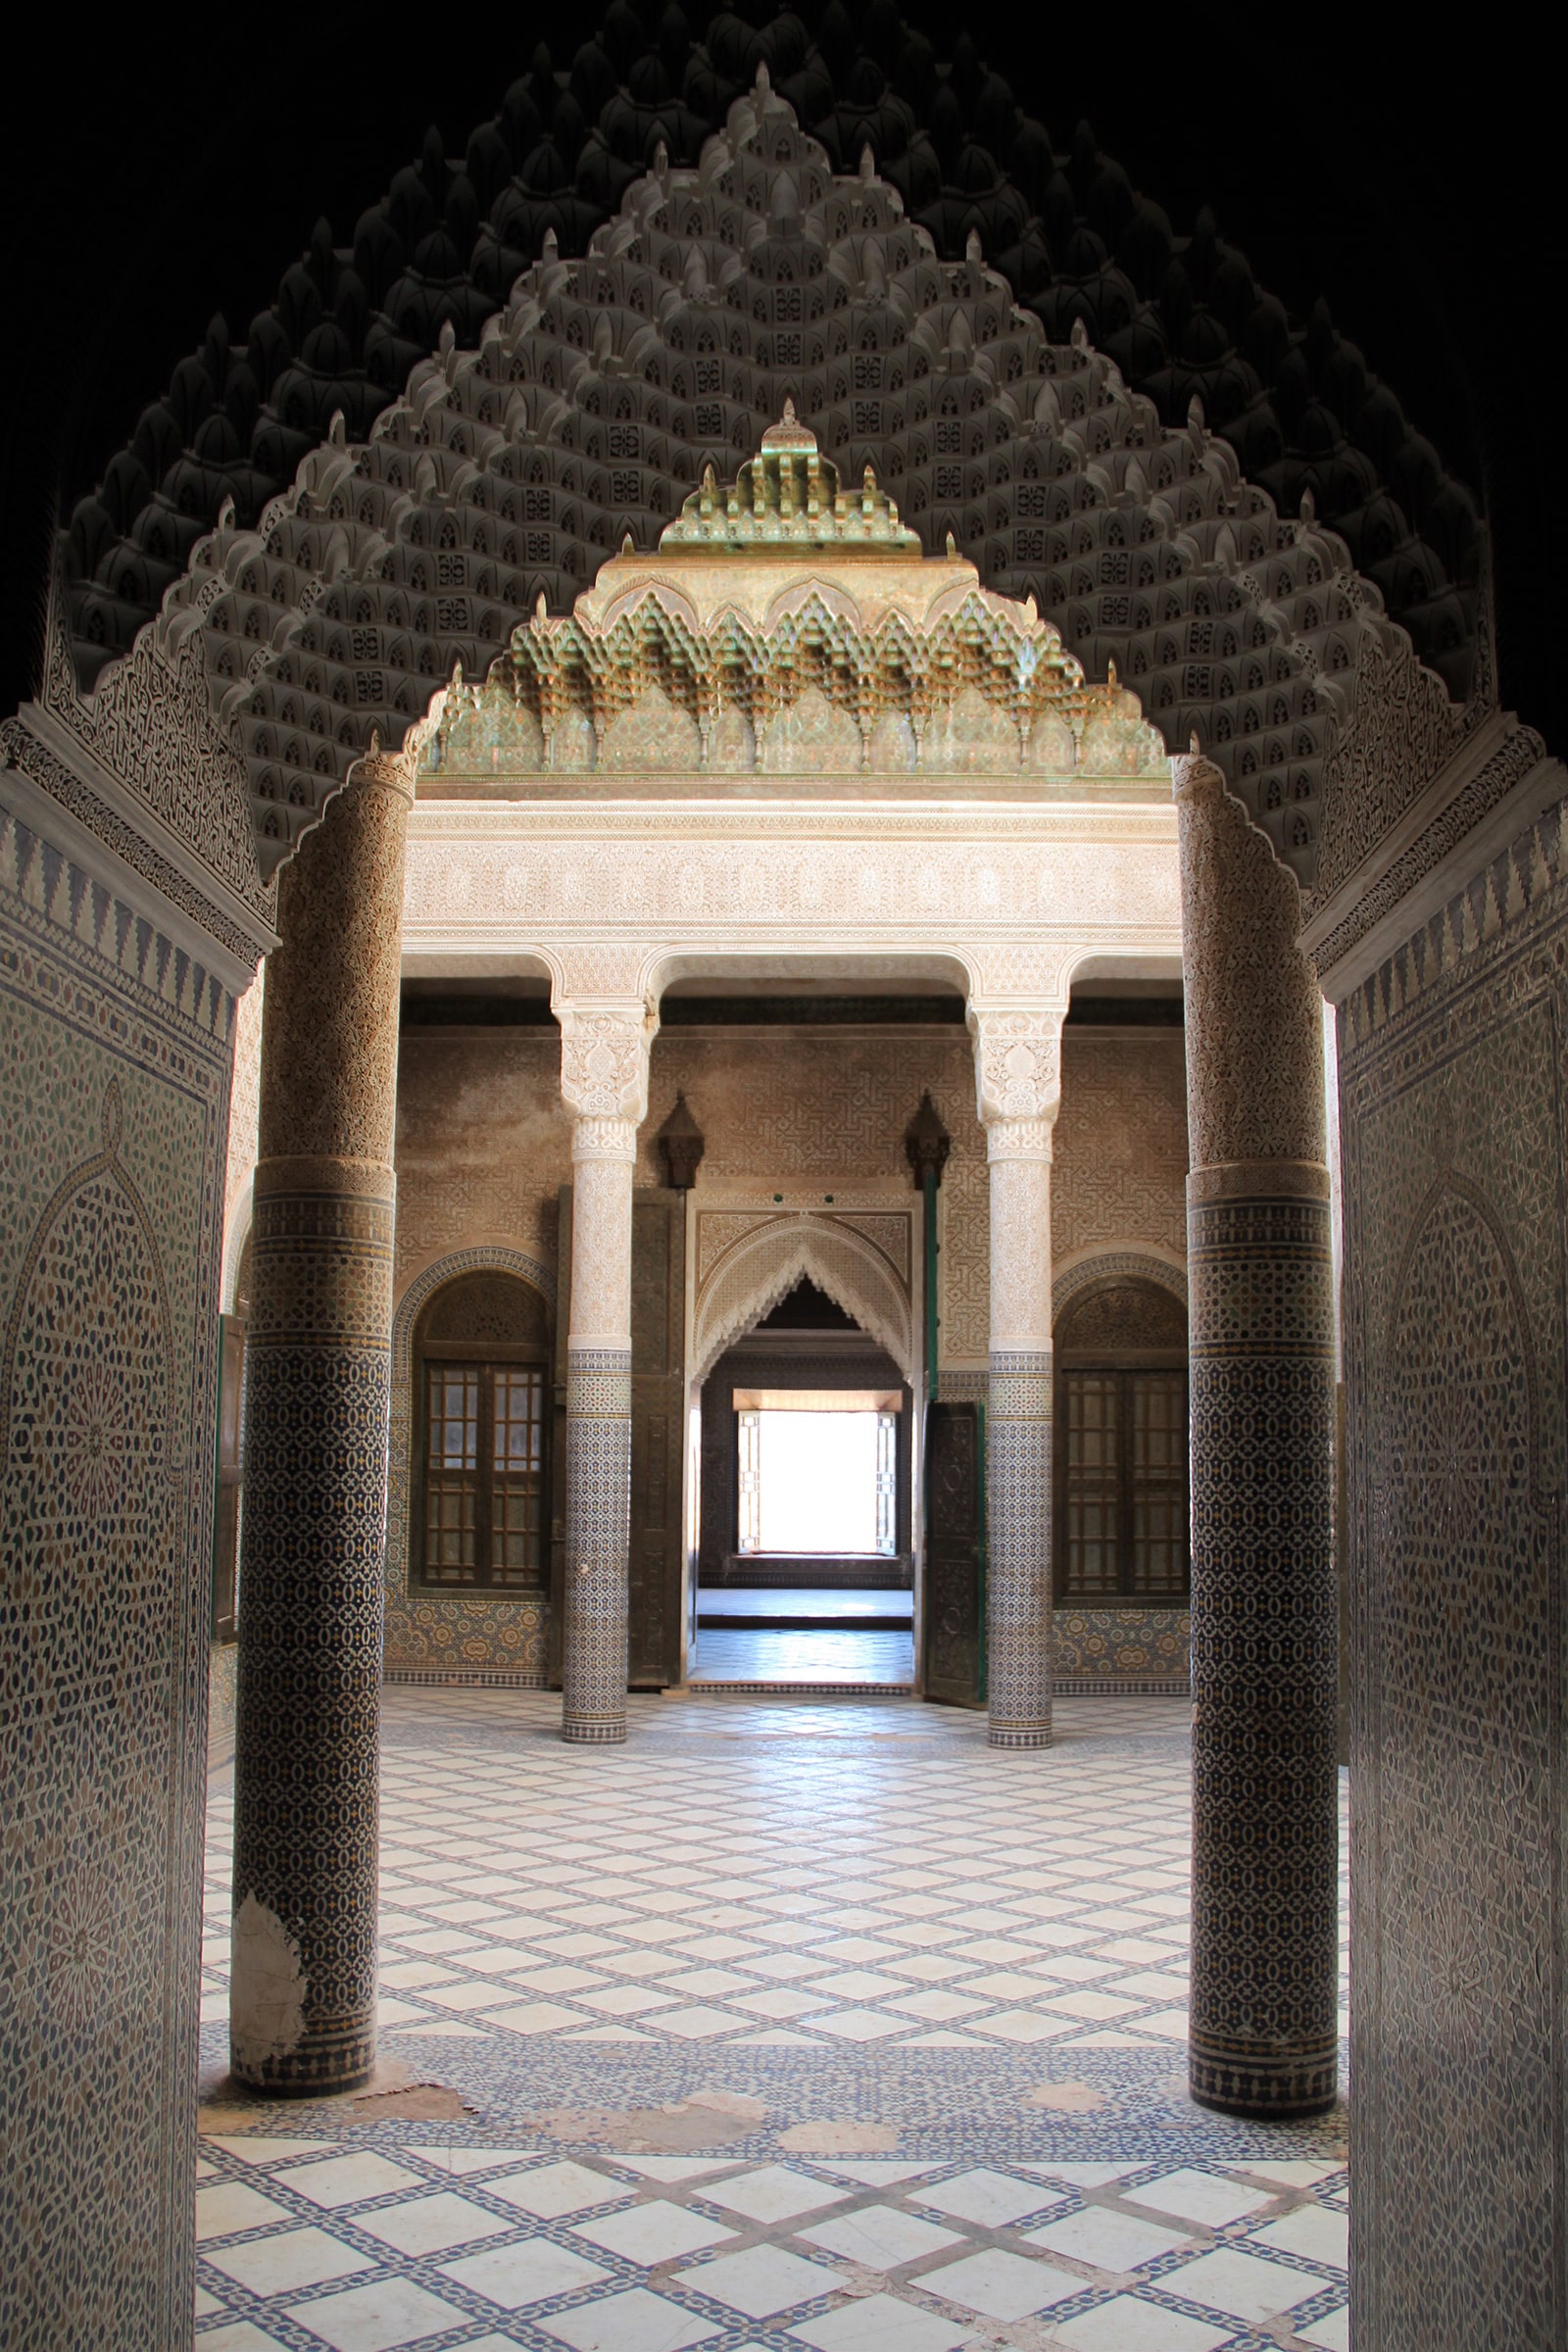 Nuptial rooms door in Telouet kasbah